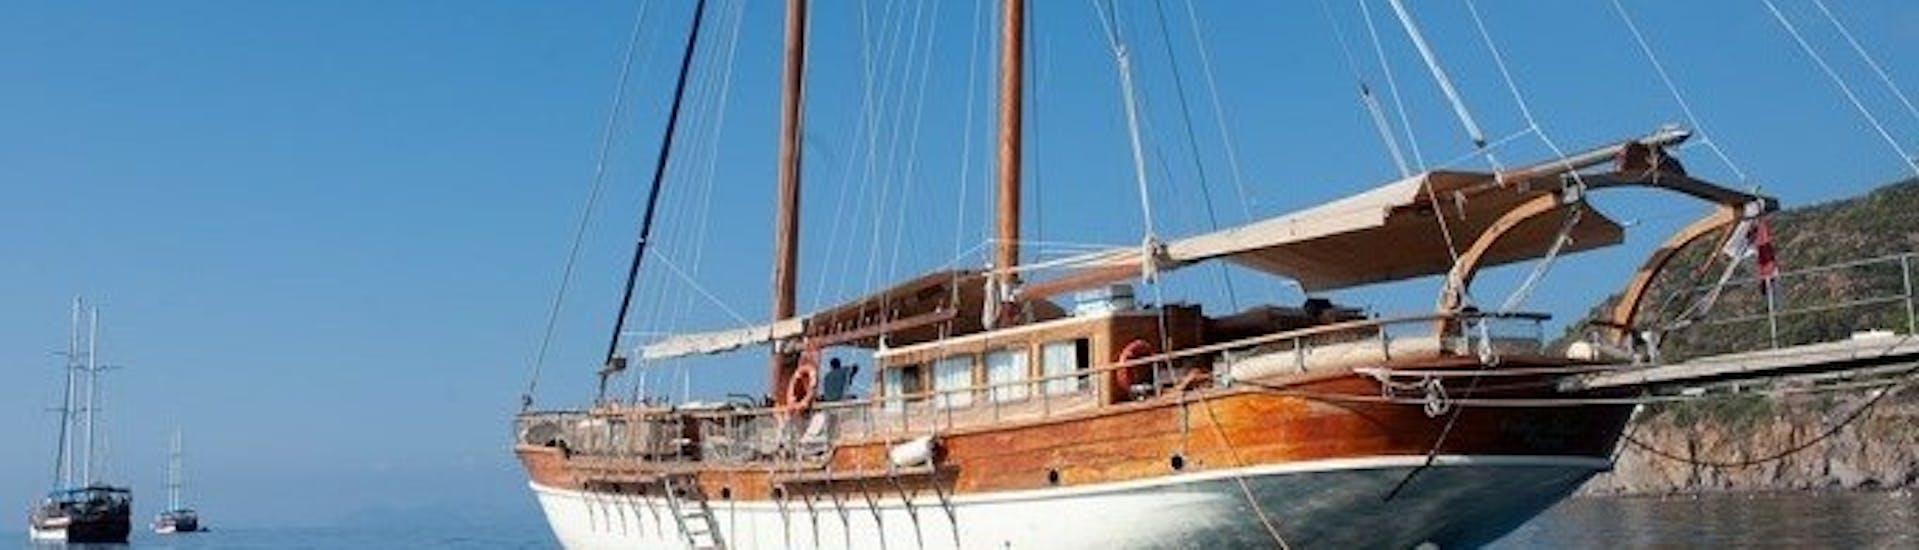 Gezicht op de Vintage Zeilboot gebruikt tijdens de Vintage Zeilboot Trip naar de Amalfi Kust vanuit Salerno met Lunch met Salerno Incoming.